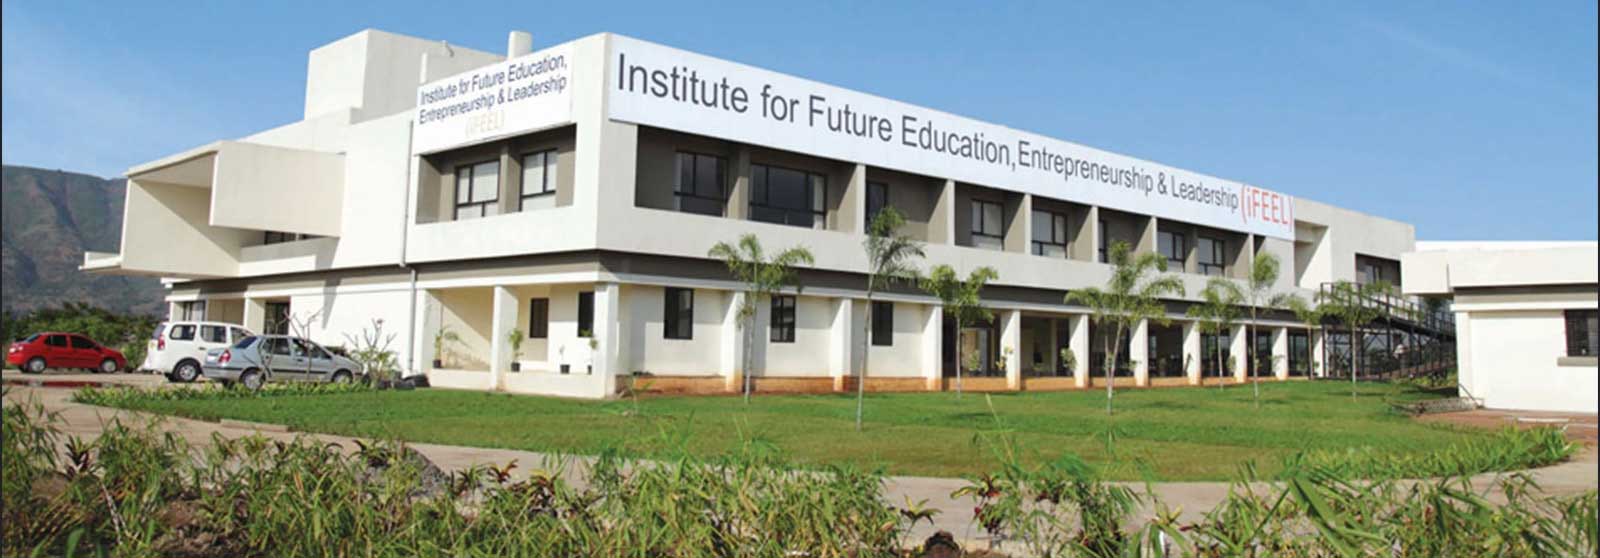 Institute for Future Education building